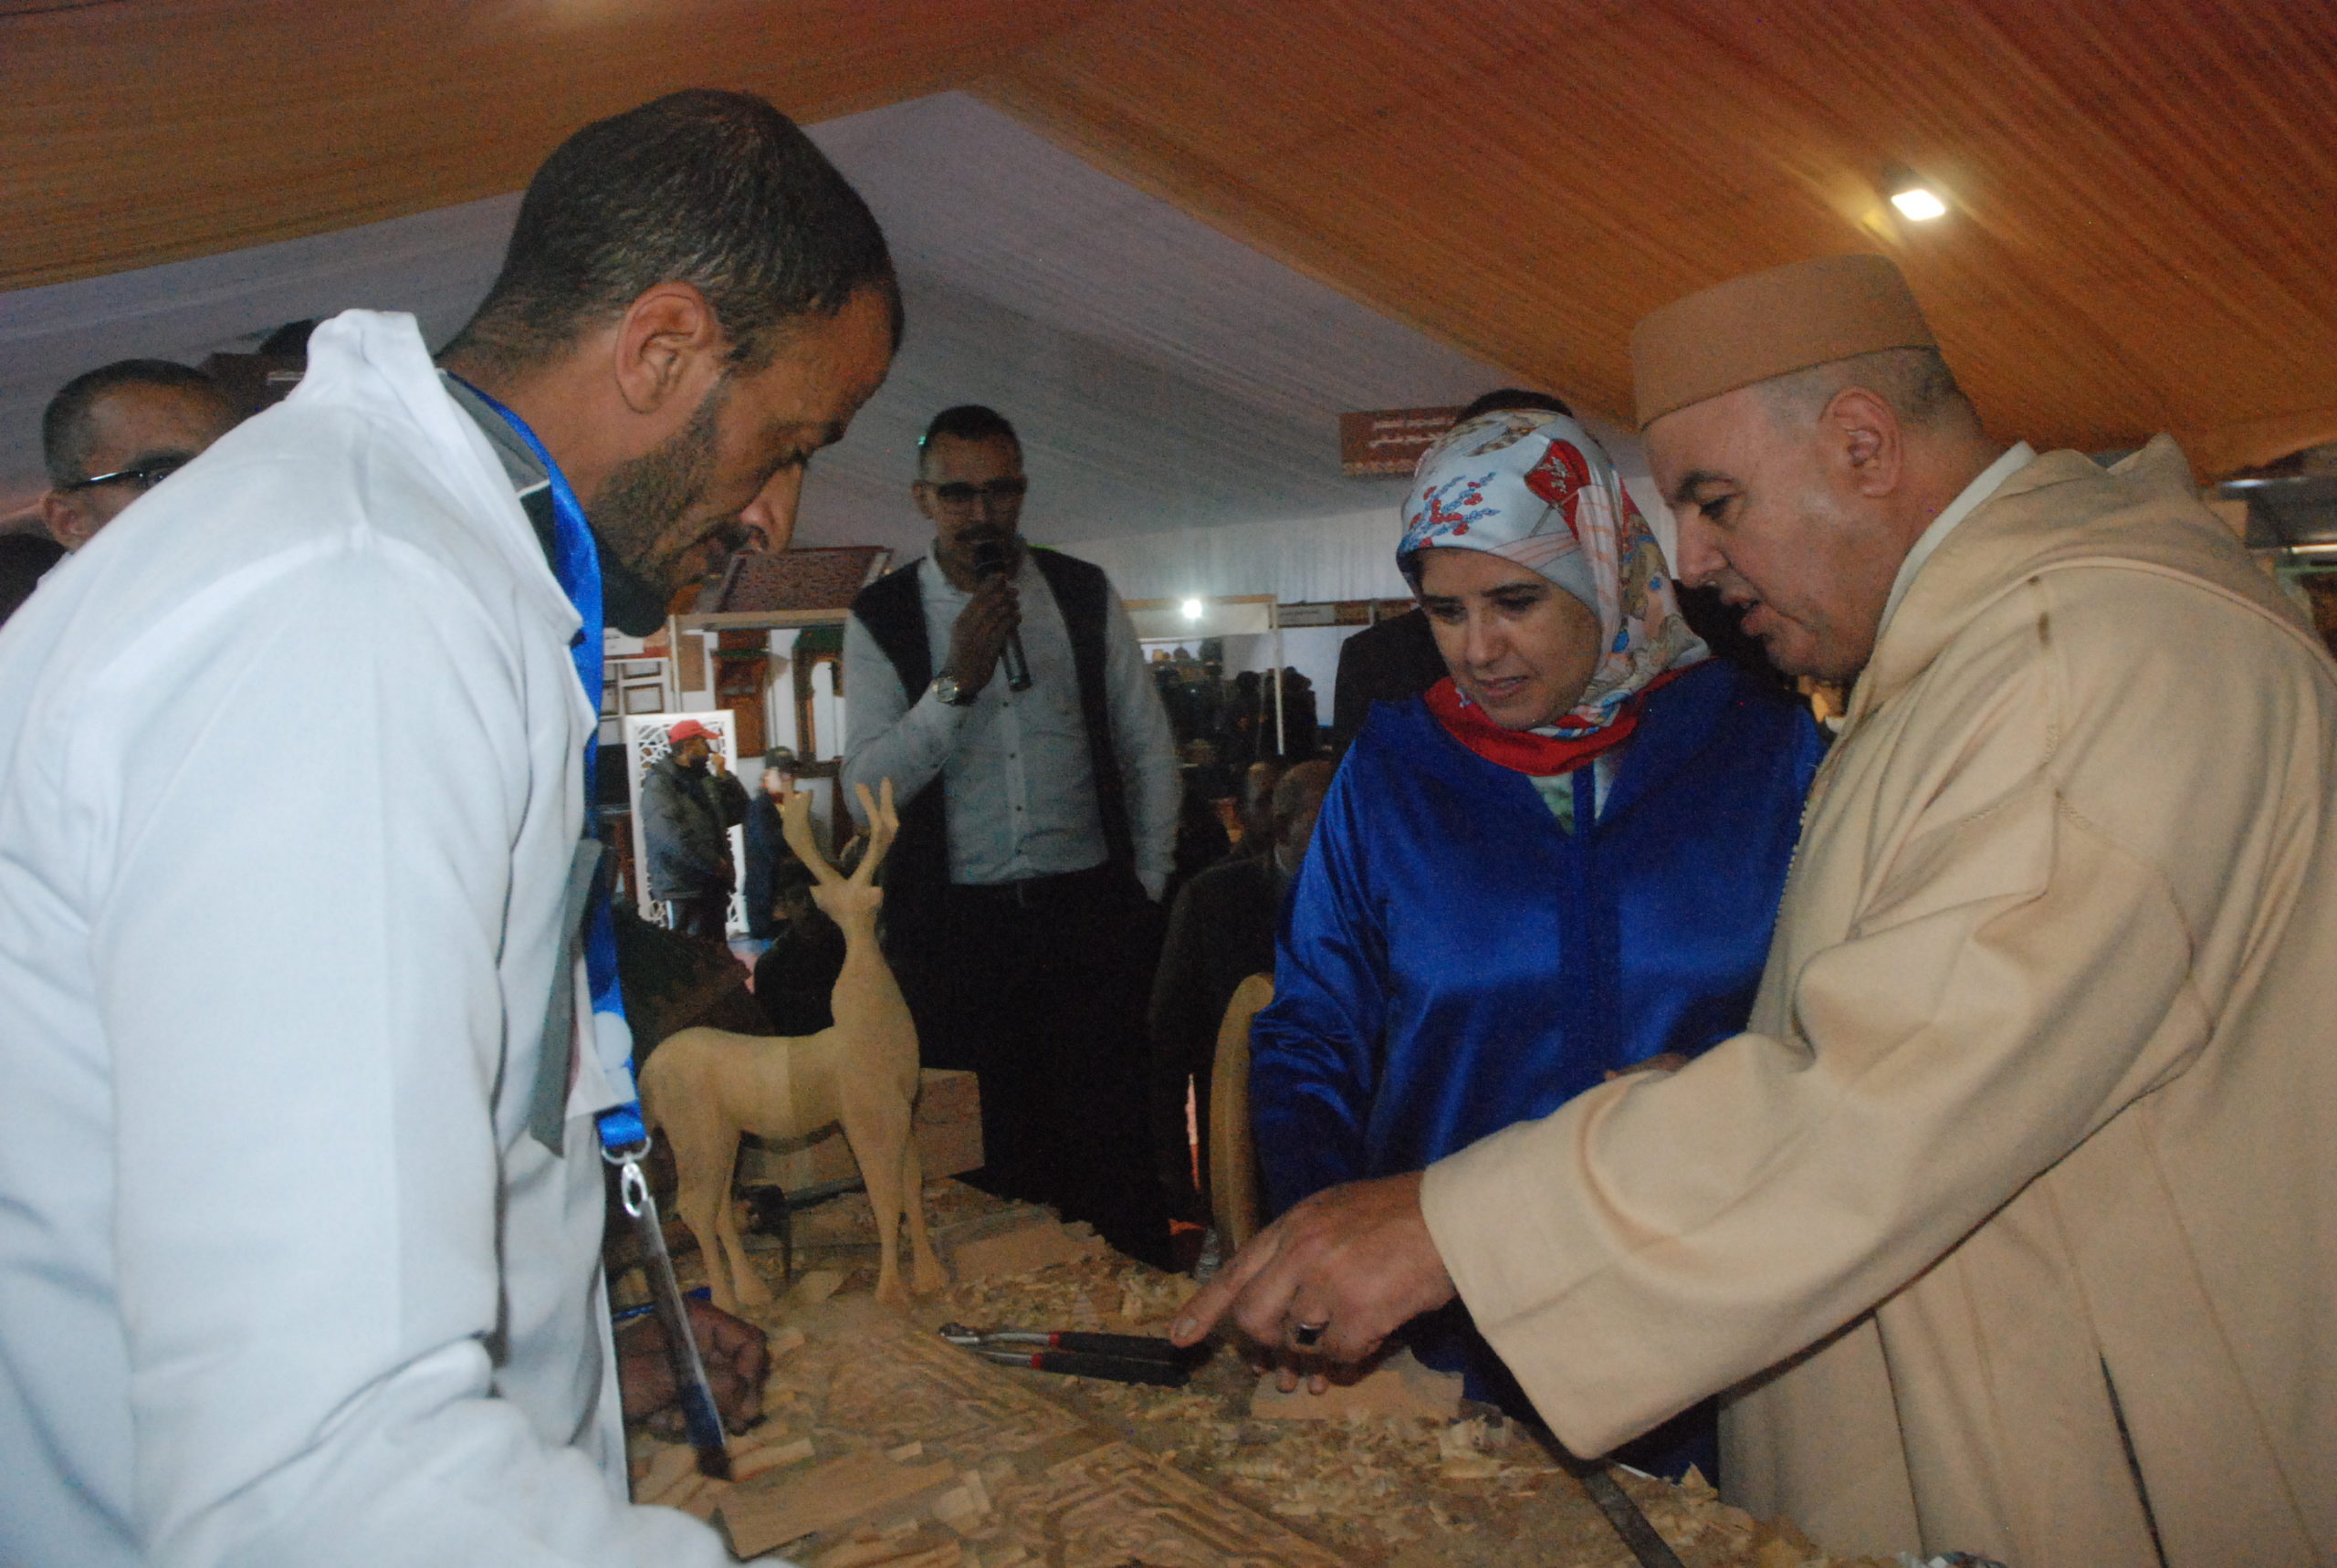 SIBM : Visite de Mme jamila El MOSSALI Secrétaire d’Etat chargée de l’artisanat et de l’économie sociale